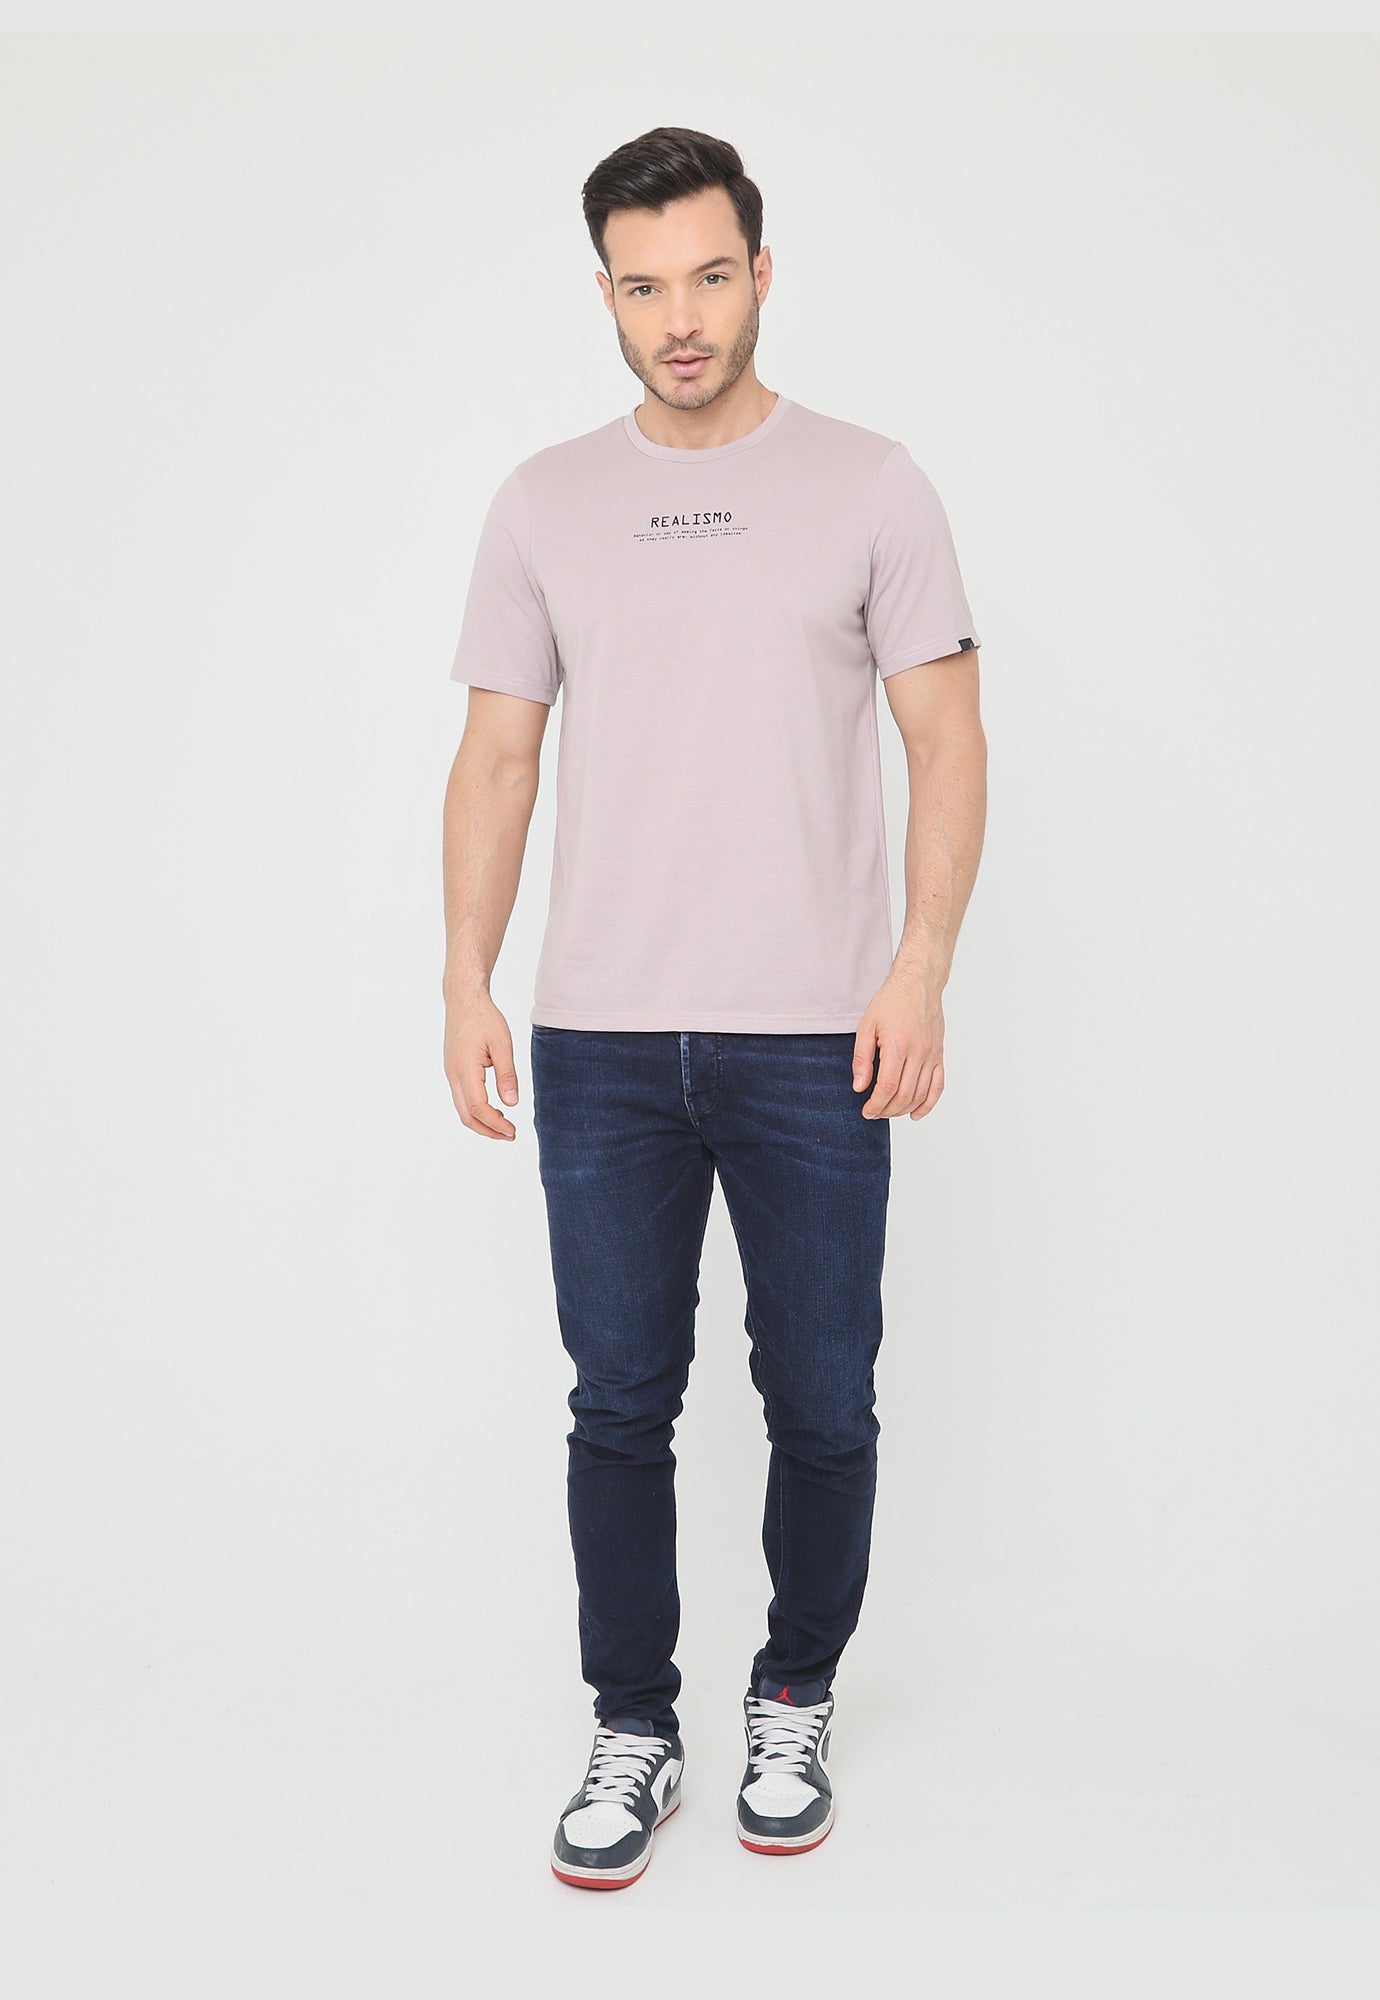 Camiseta rosa mística manga corta, estampado pequeño en frente y en posterior para hombre